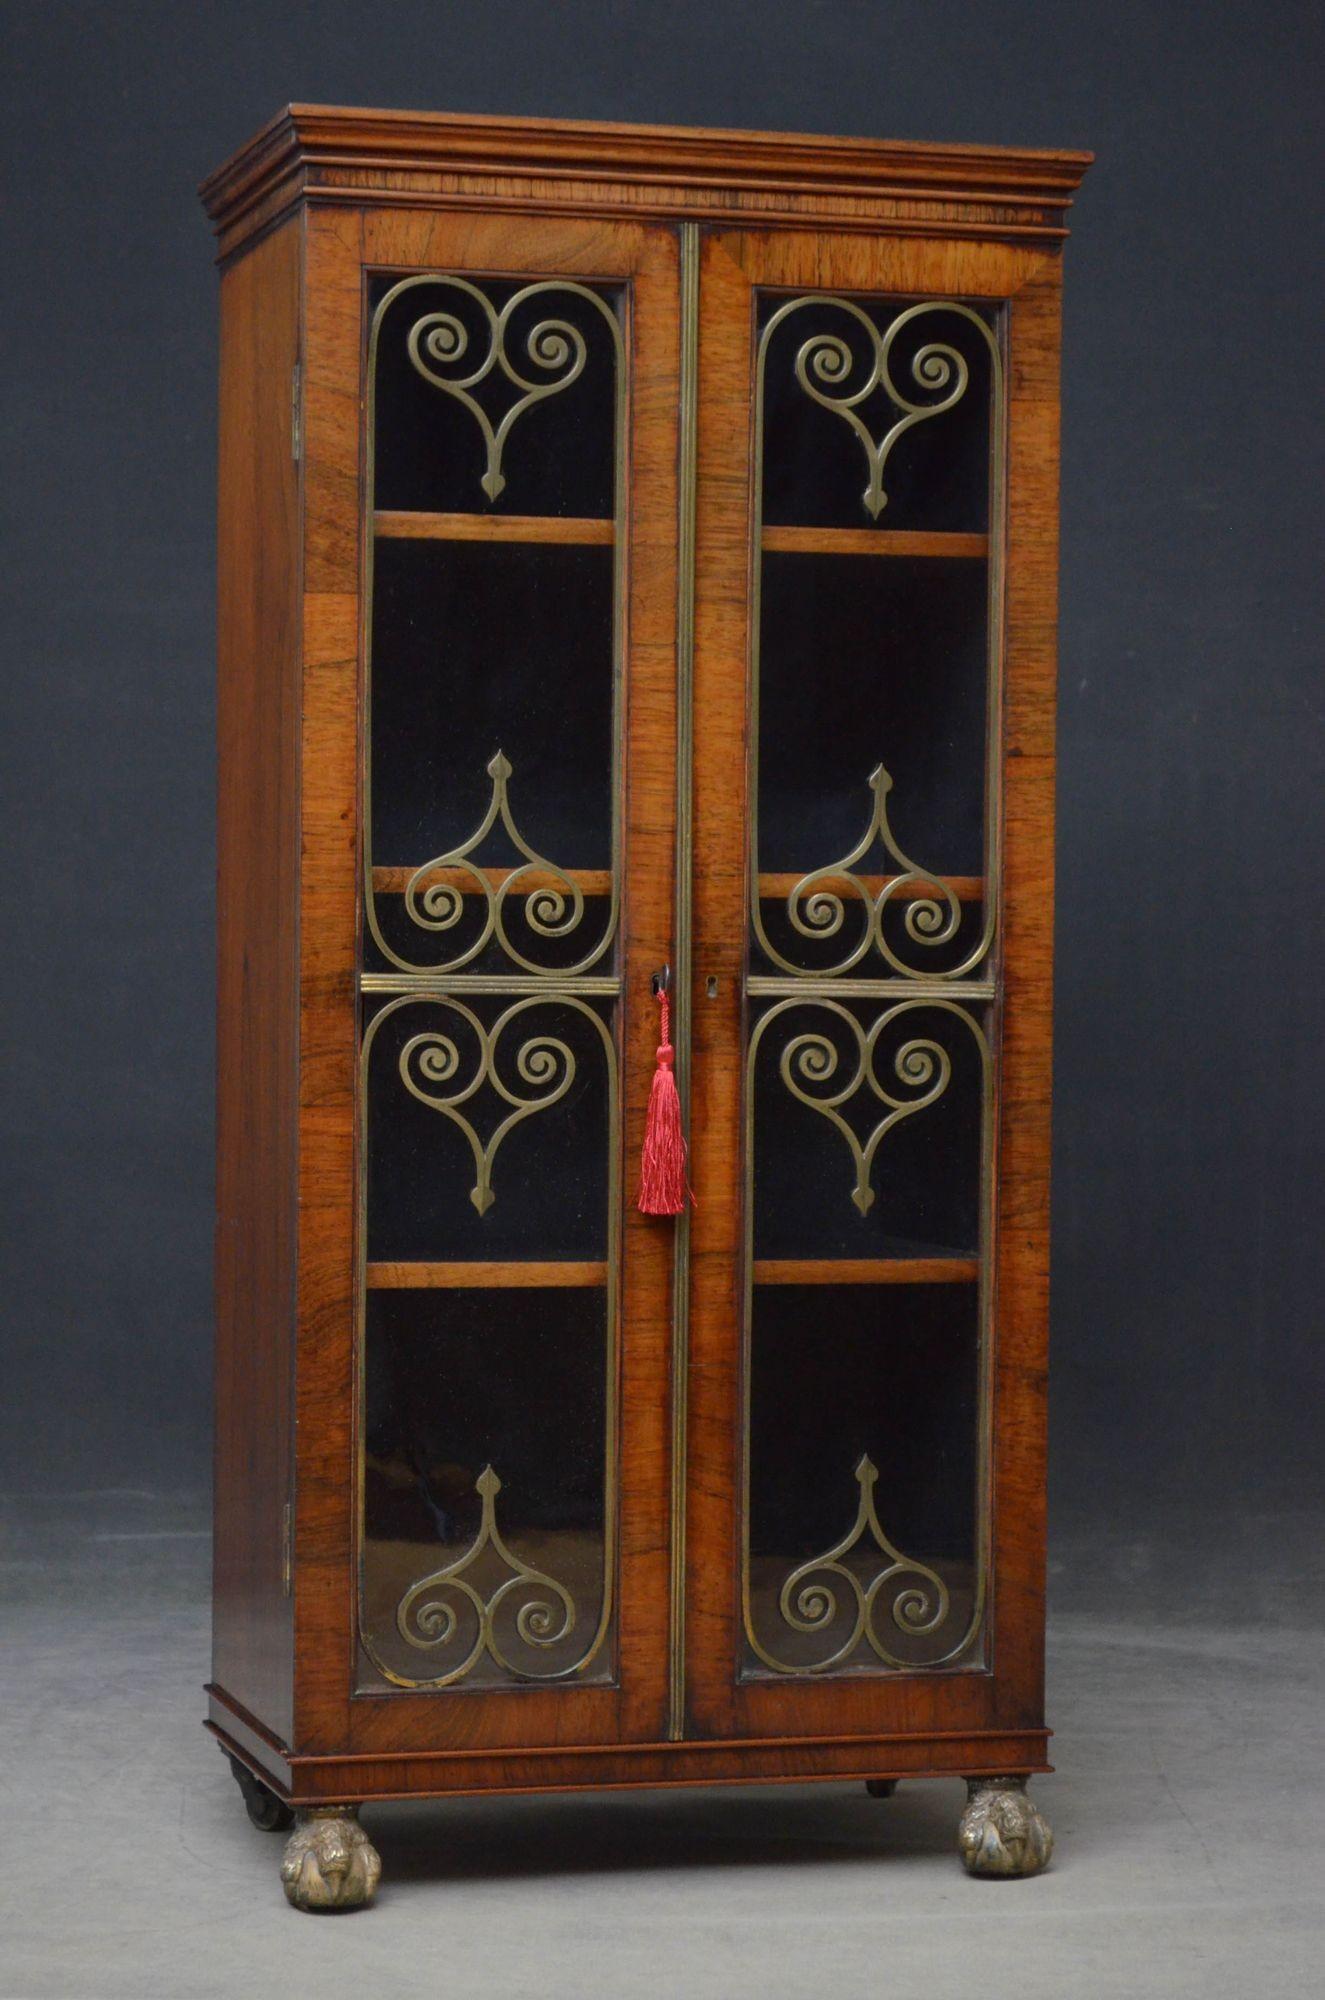 Sn5434 Belle et élégante bibliothèque de style Régence en bois de rose, de proportions étroites, avec un dessus en voile au-dessus d'une frise peu profonde et une paire de portes vitrées munies d'une serrure et d'une clé d'origine, décorées de